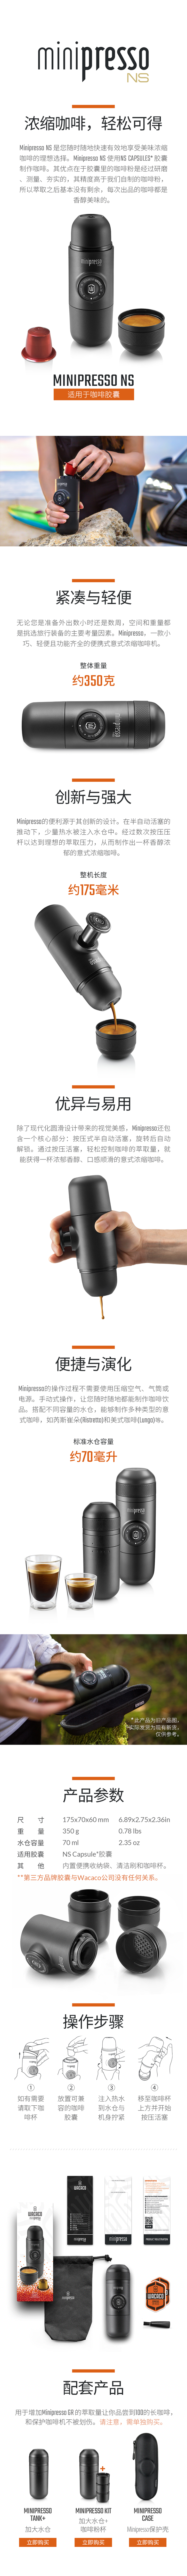 Minipresso NS便携式意式浓缩咖啡机